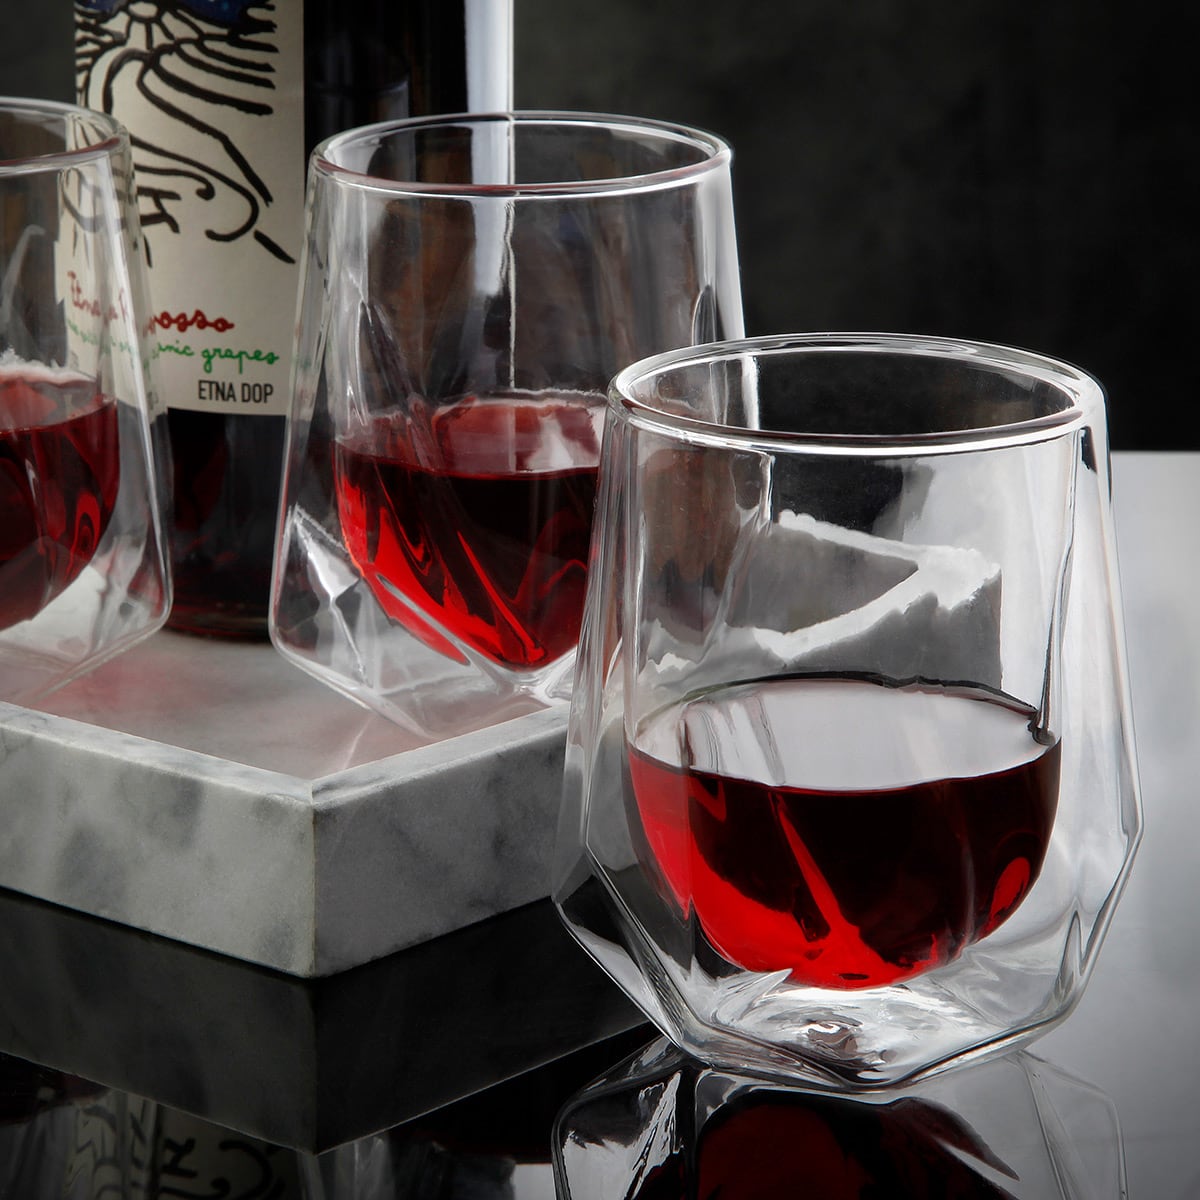 Rivendell Stemless Wine Glasses, Set of 4 - Aerating Wine Glasses